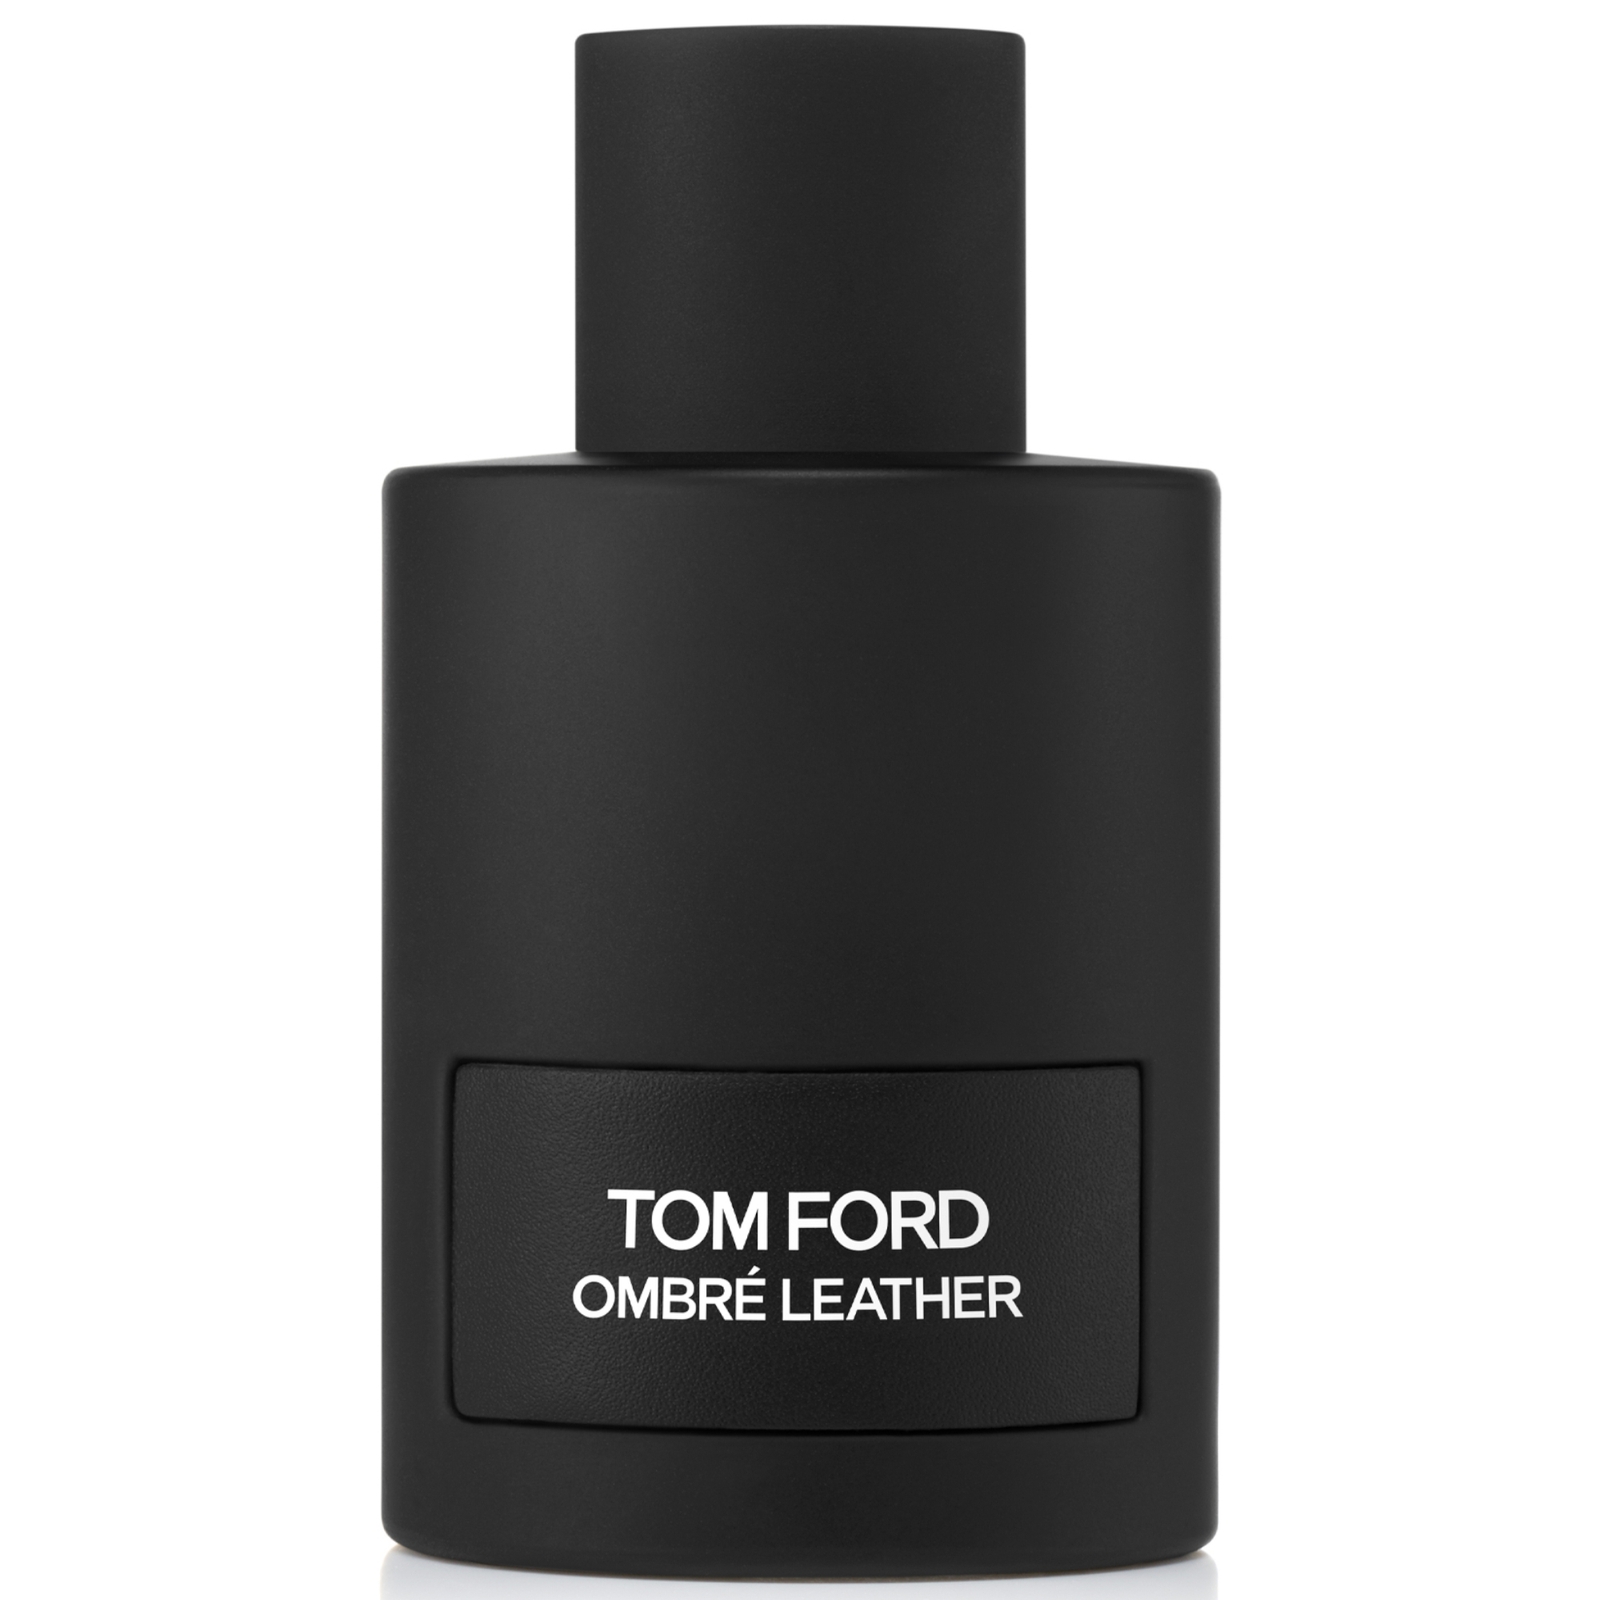 Photos - Women's Fragrance Tom Ford Ombre Leather Eau de Parfum 150ml T9C7010000 